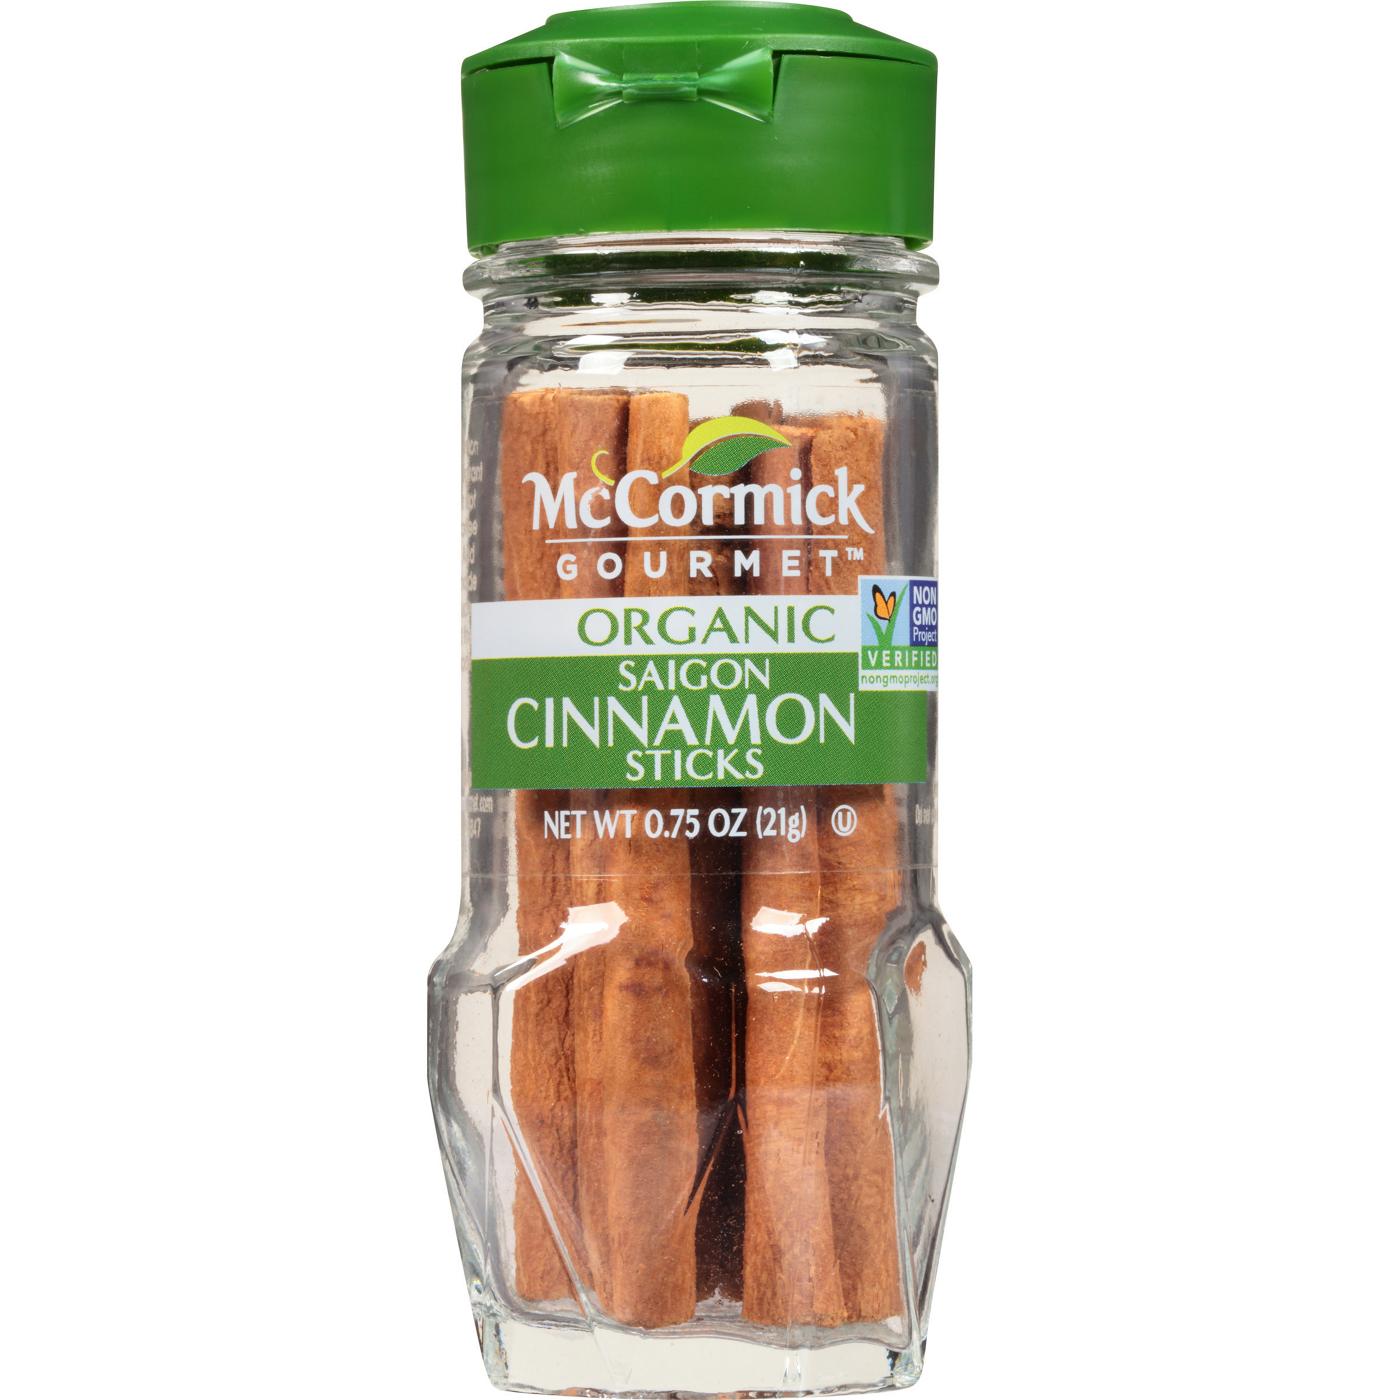 McCormick Organic Saigon Cinnamon Sticks; image 1 of 4